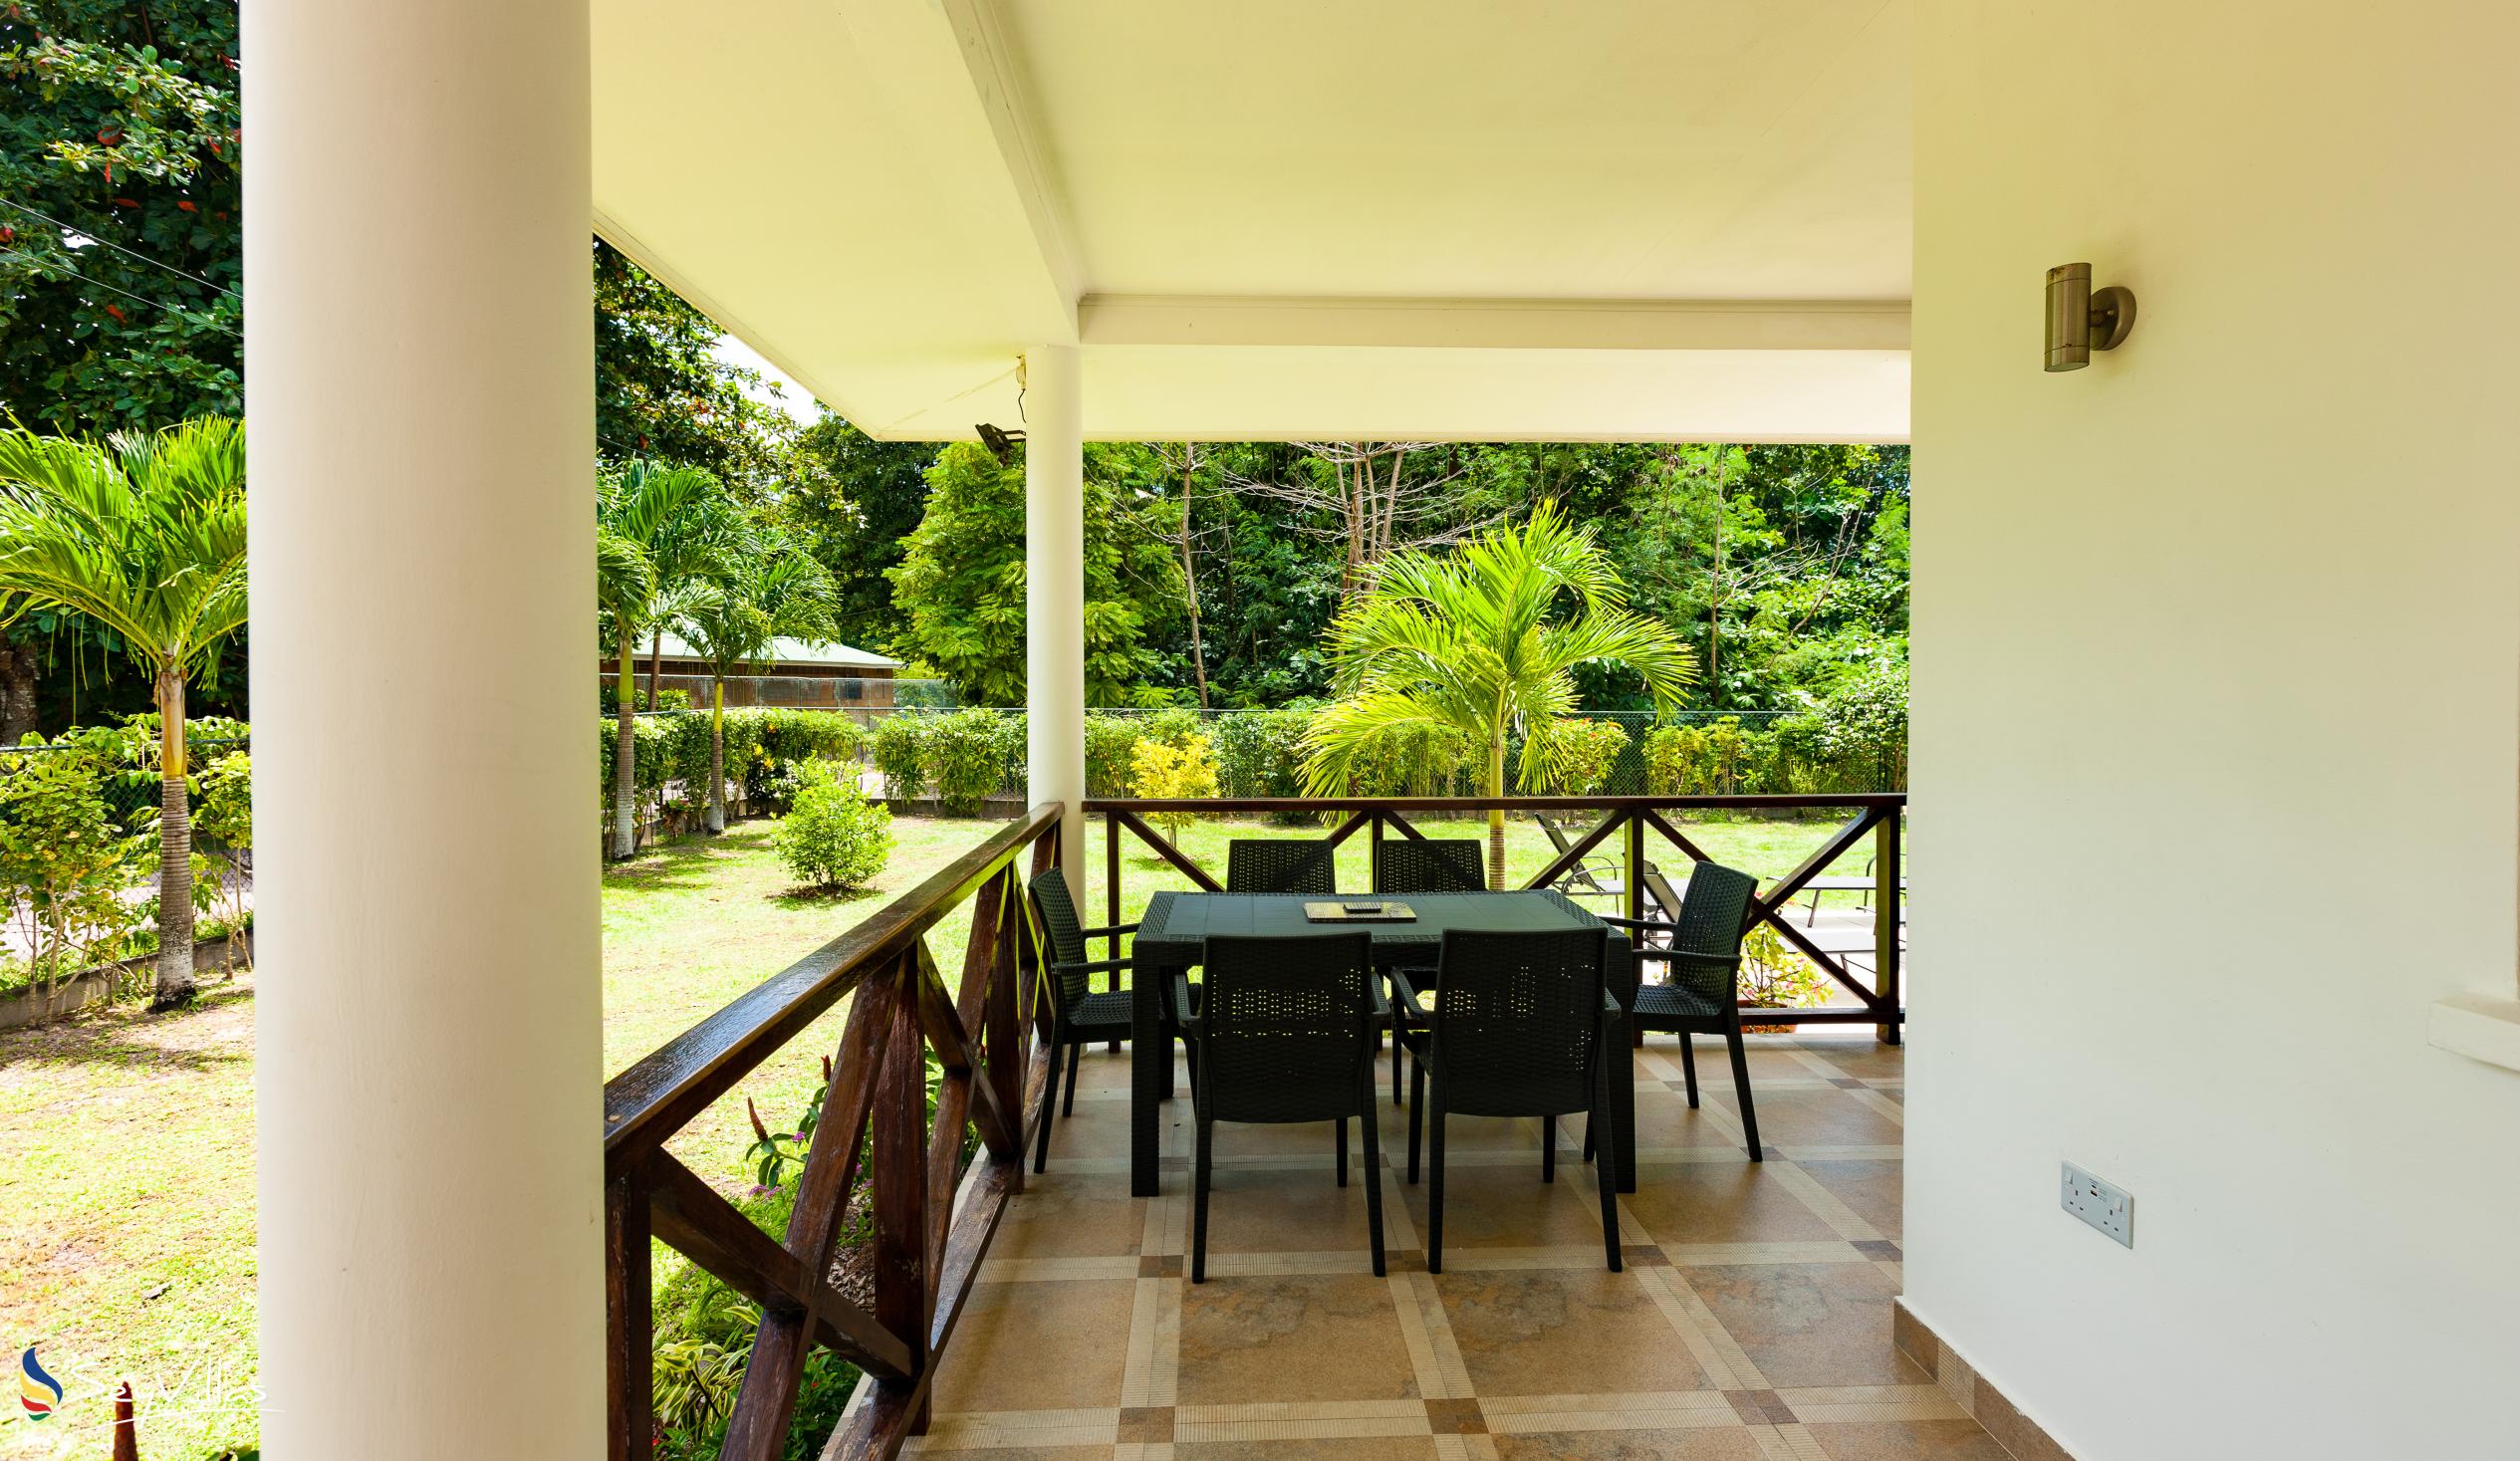 Foto 17: Villa Laure - Aussenbereich - Praslin (Seychellen)